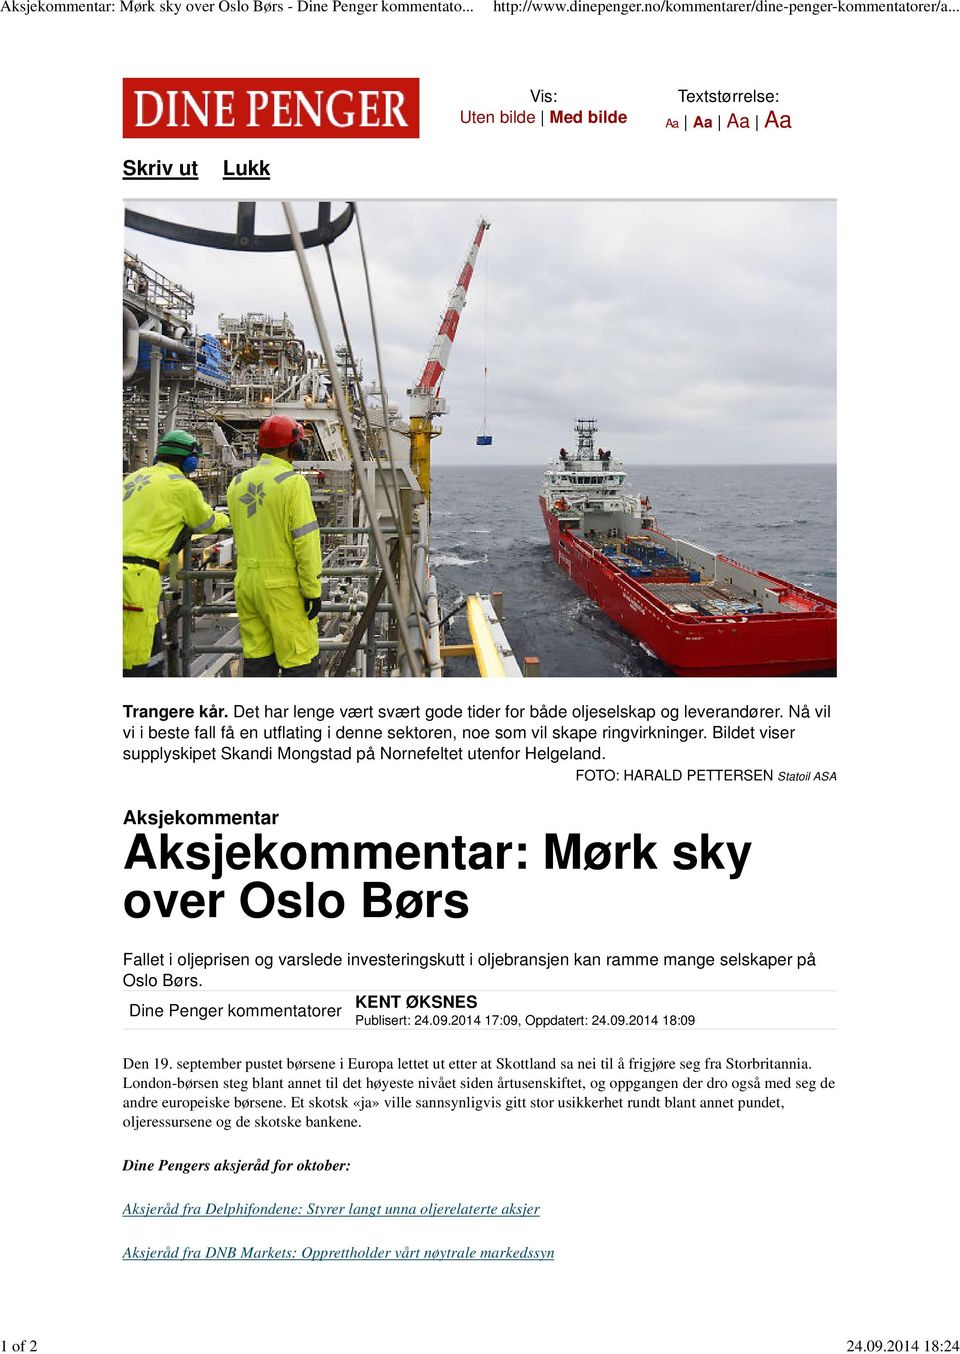 Nå vil vi i beste fall få en utflating i denne sektoren, noe som vil skape ringvirkninger. Bildet viser supplyskipet Skandi Mongstad på Nornefeltet utenfor Helgeland.